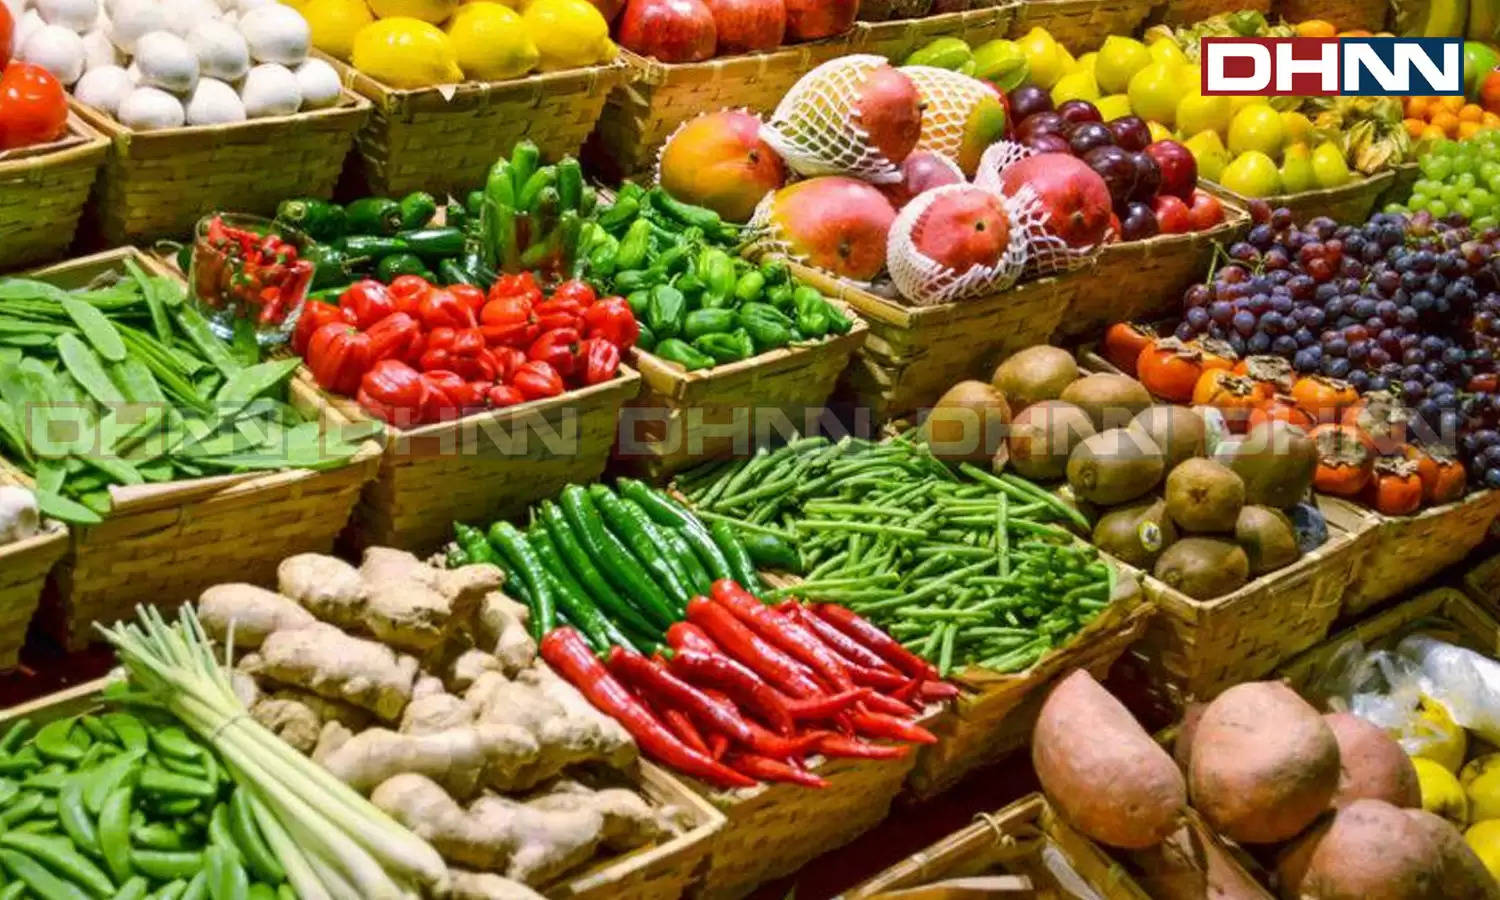 Vegetable Price Hike: प्रचंड गर्मी के कारण सब्जियों के पैदावार पर असर, 30 प्रतिशत बढ़े इन सब्जियों के दाम